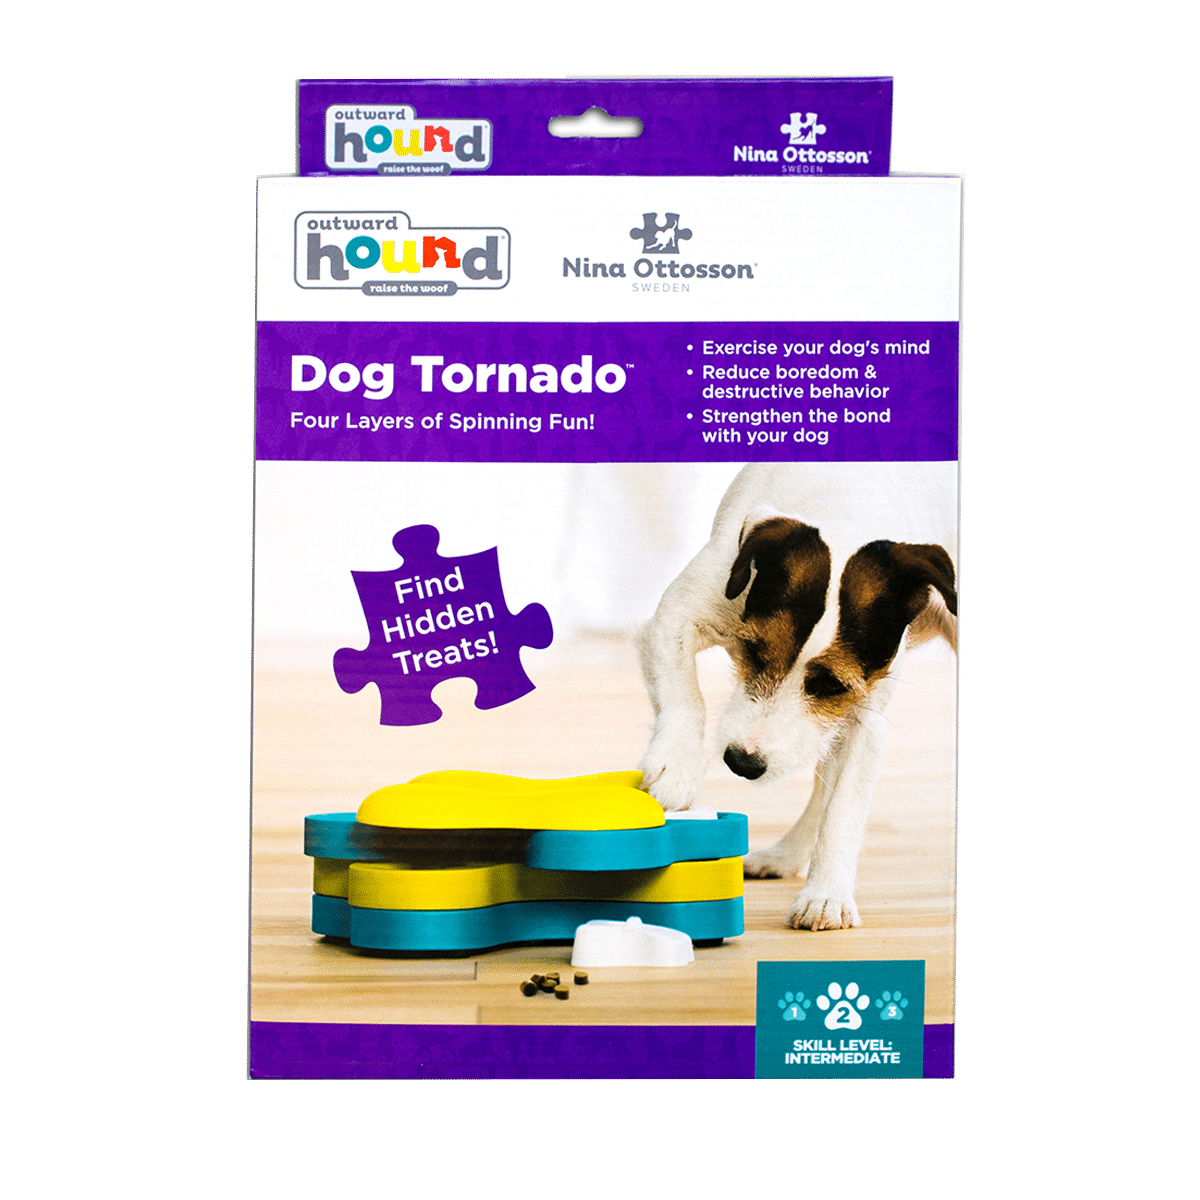 Aktivera hunden med Dog Tornado